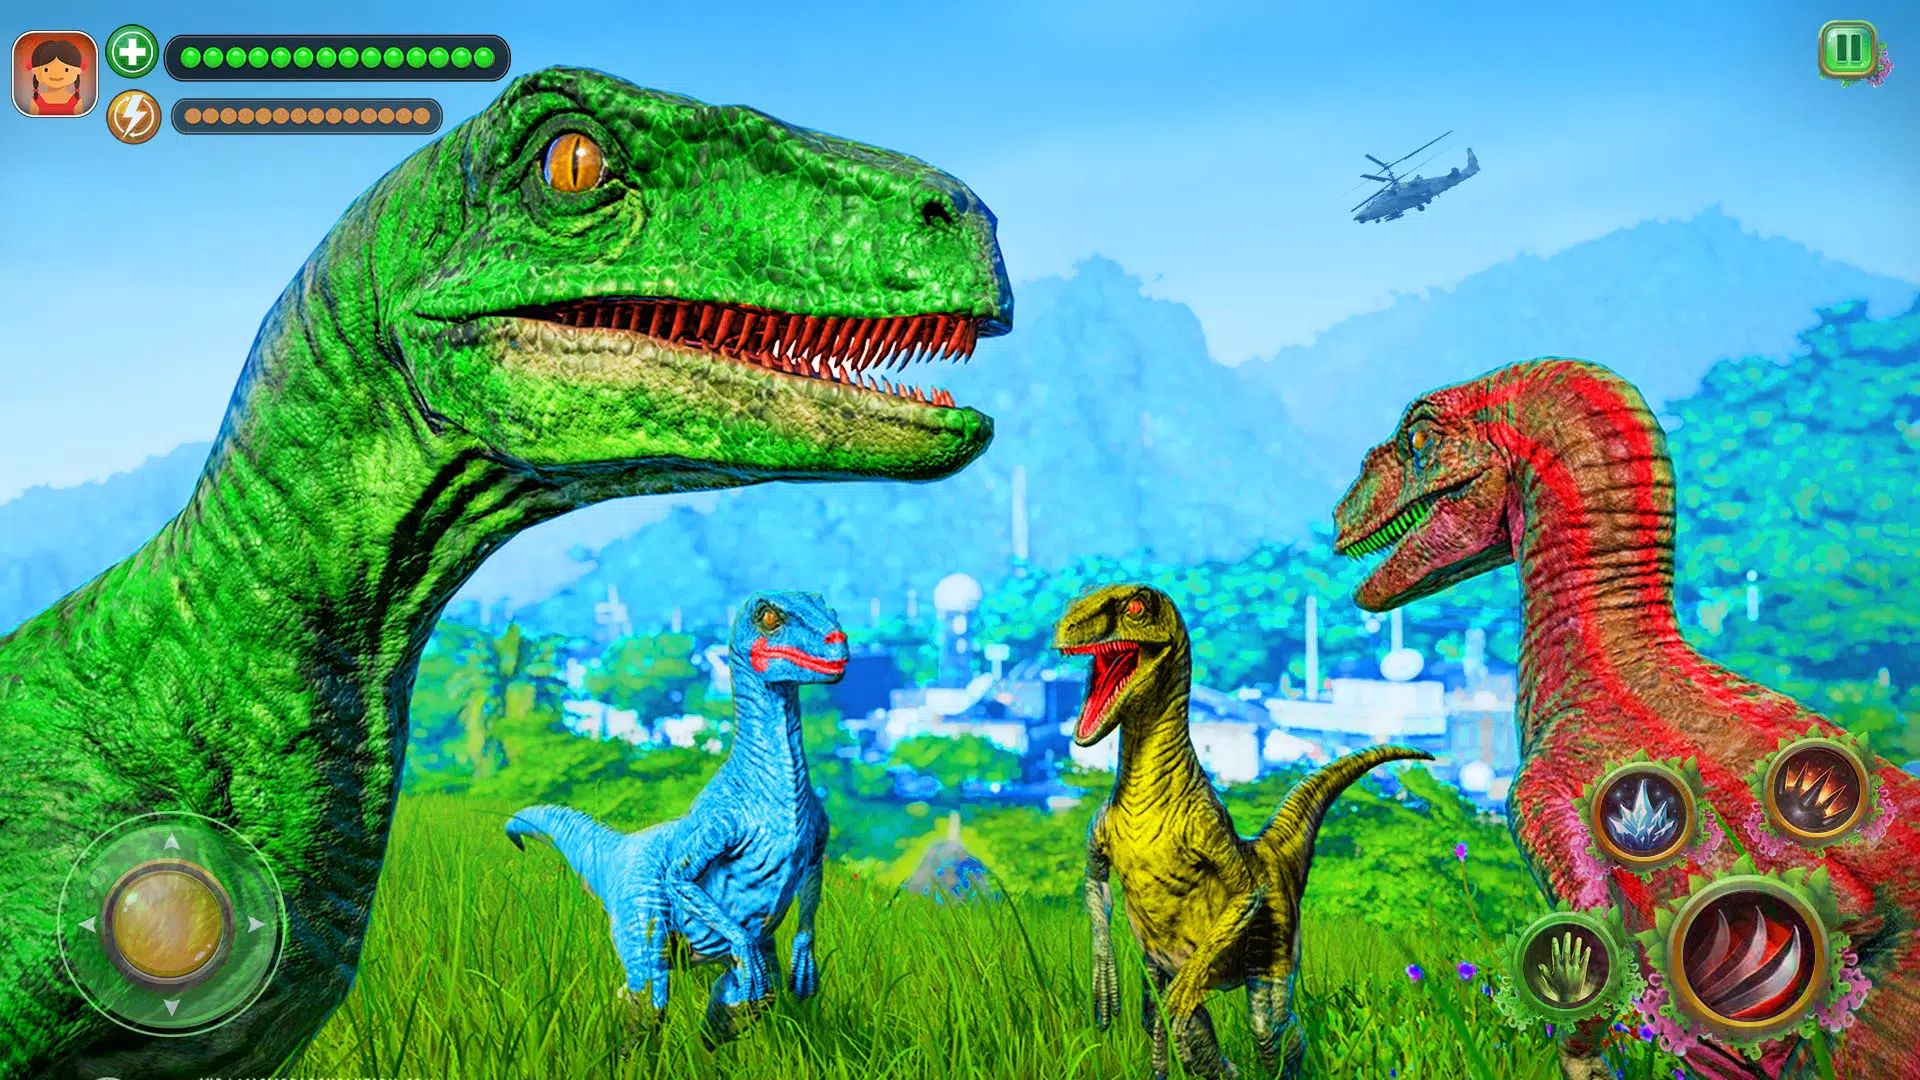 Jogos de Dinossauro Simulador na App Store